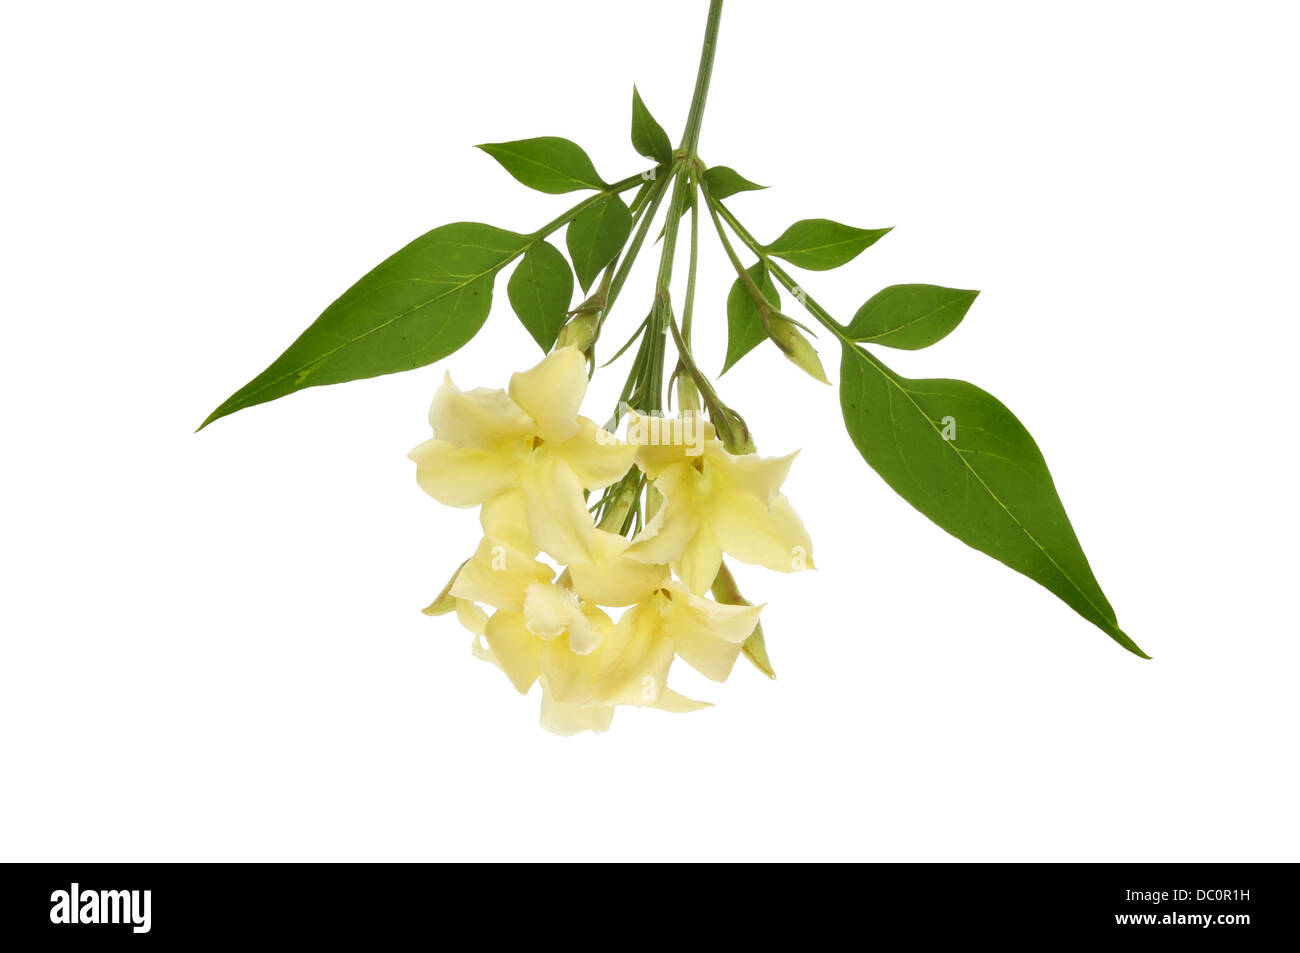 Cream jasmine flower and foliage isolated against white Stock Photo